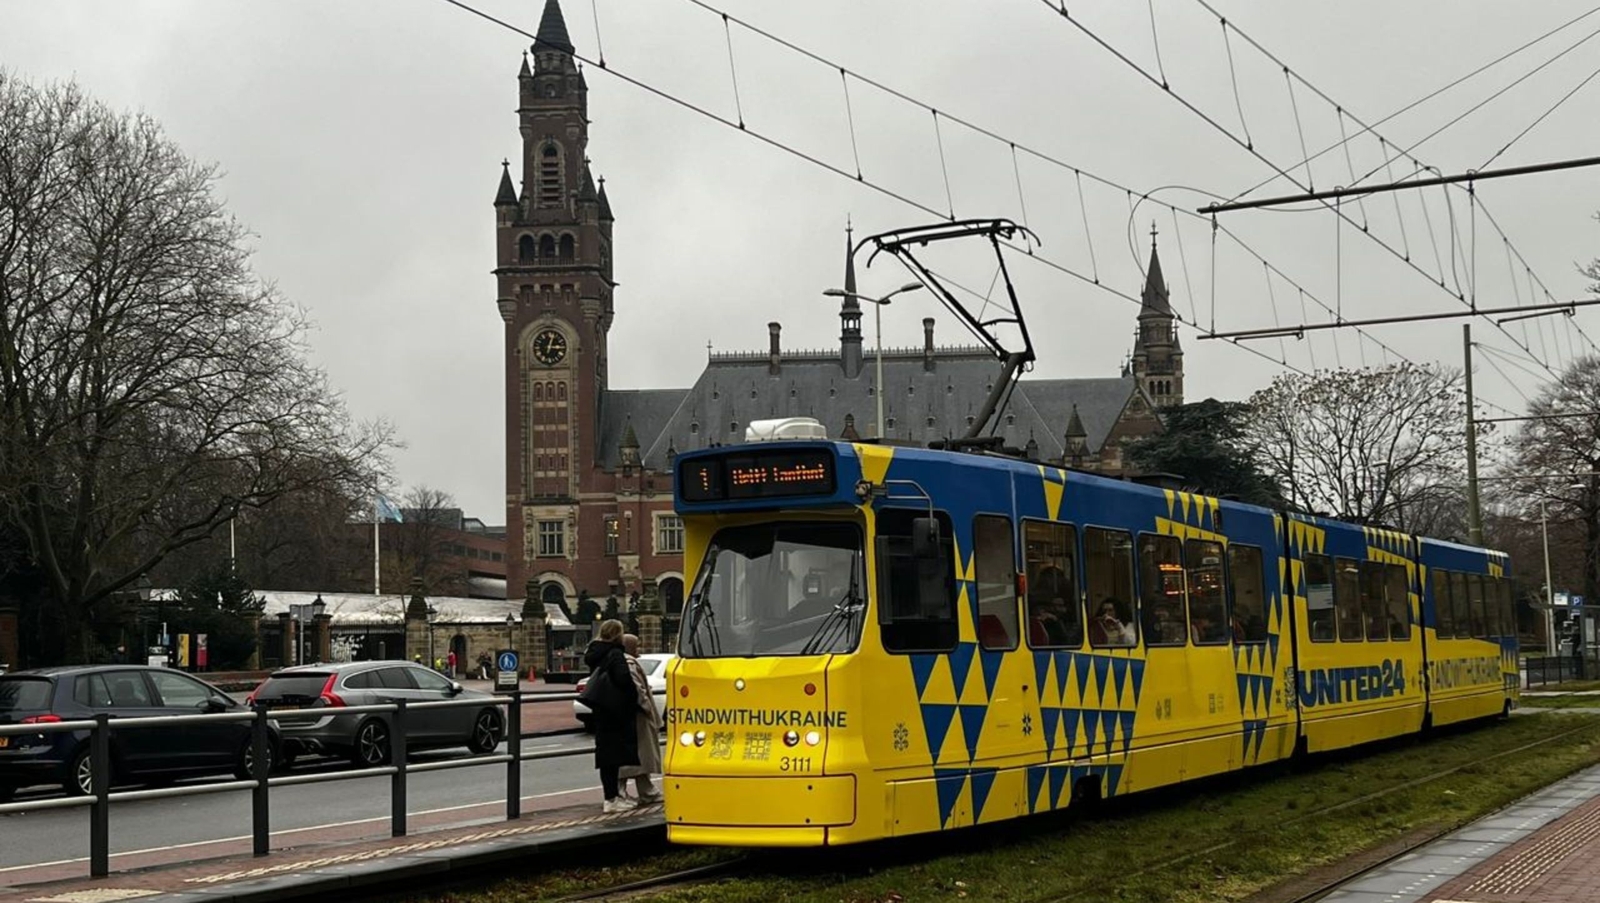 Новий трамвай із логотипом та QR- кодом UNITED24 вже курсує у Гаазі